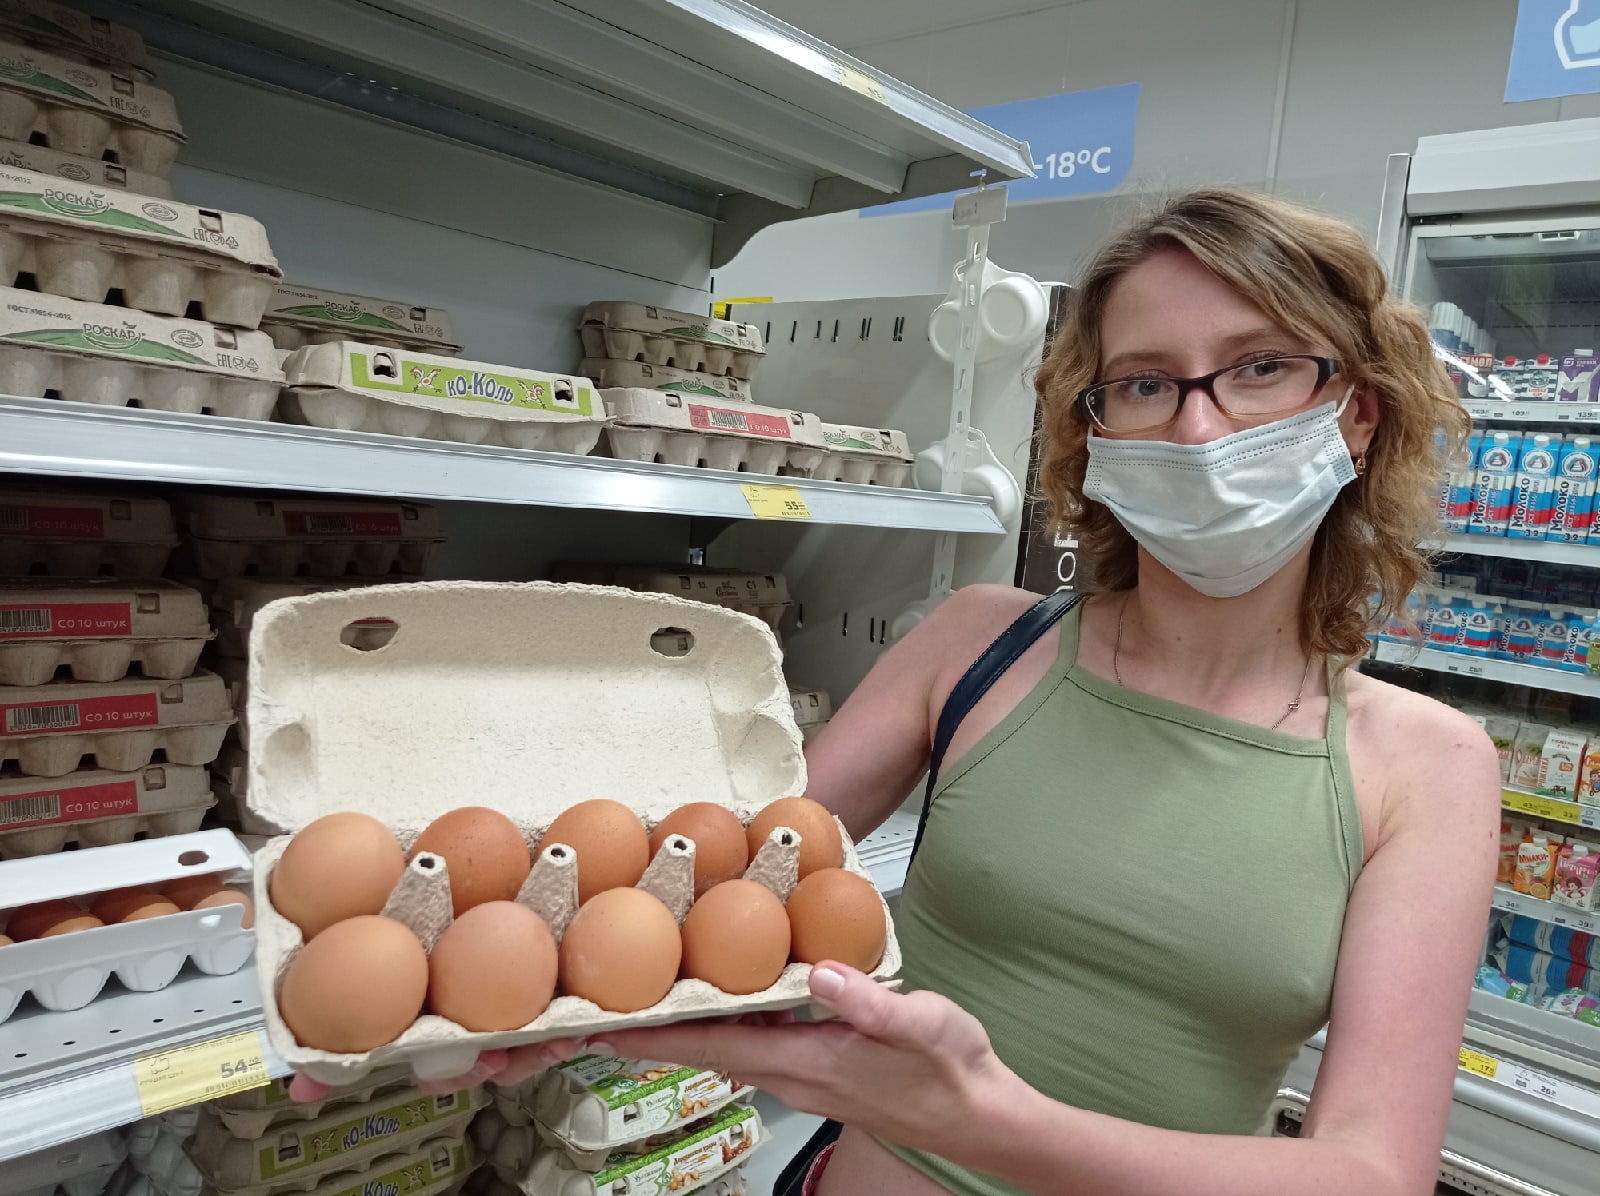  Экономист из Ярославля спрогнозировал подорожание яиц